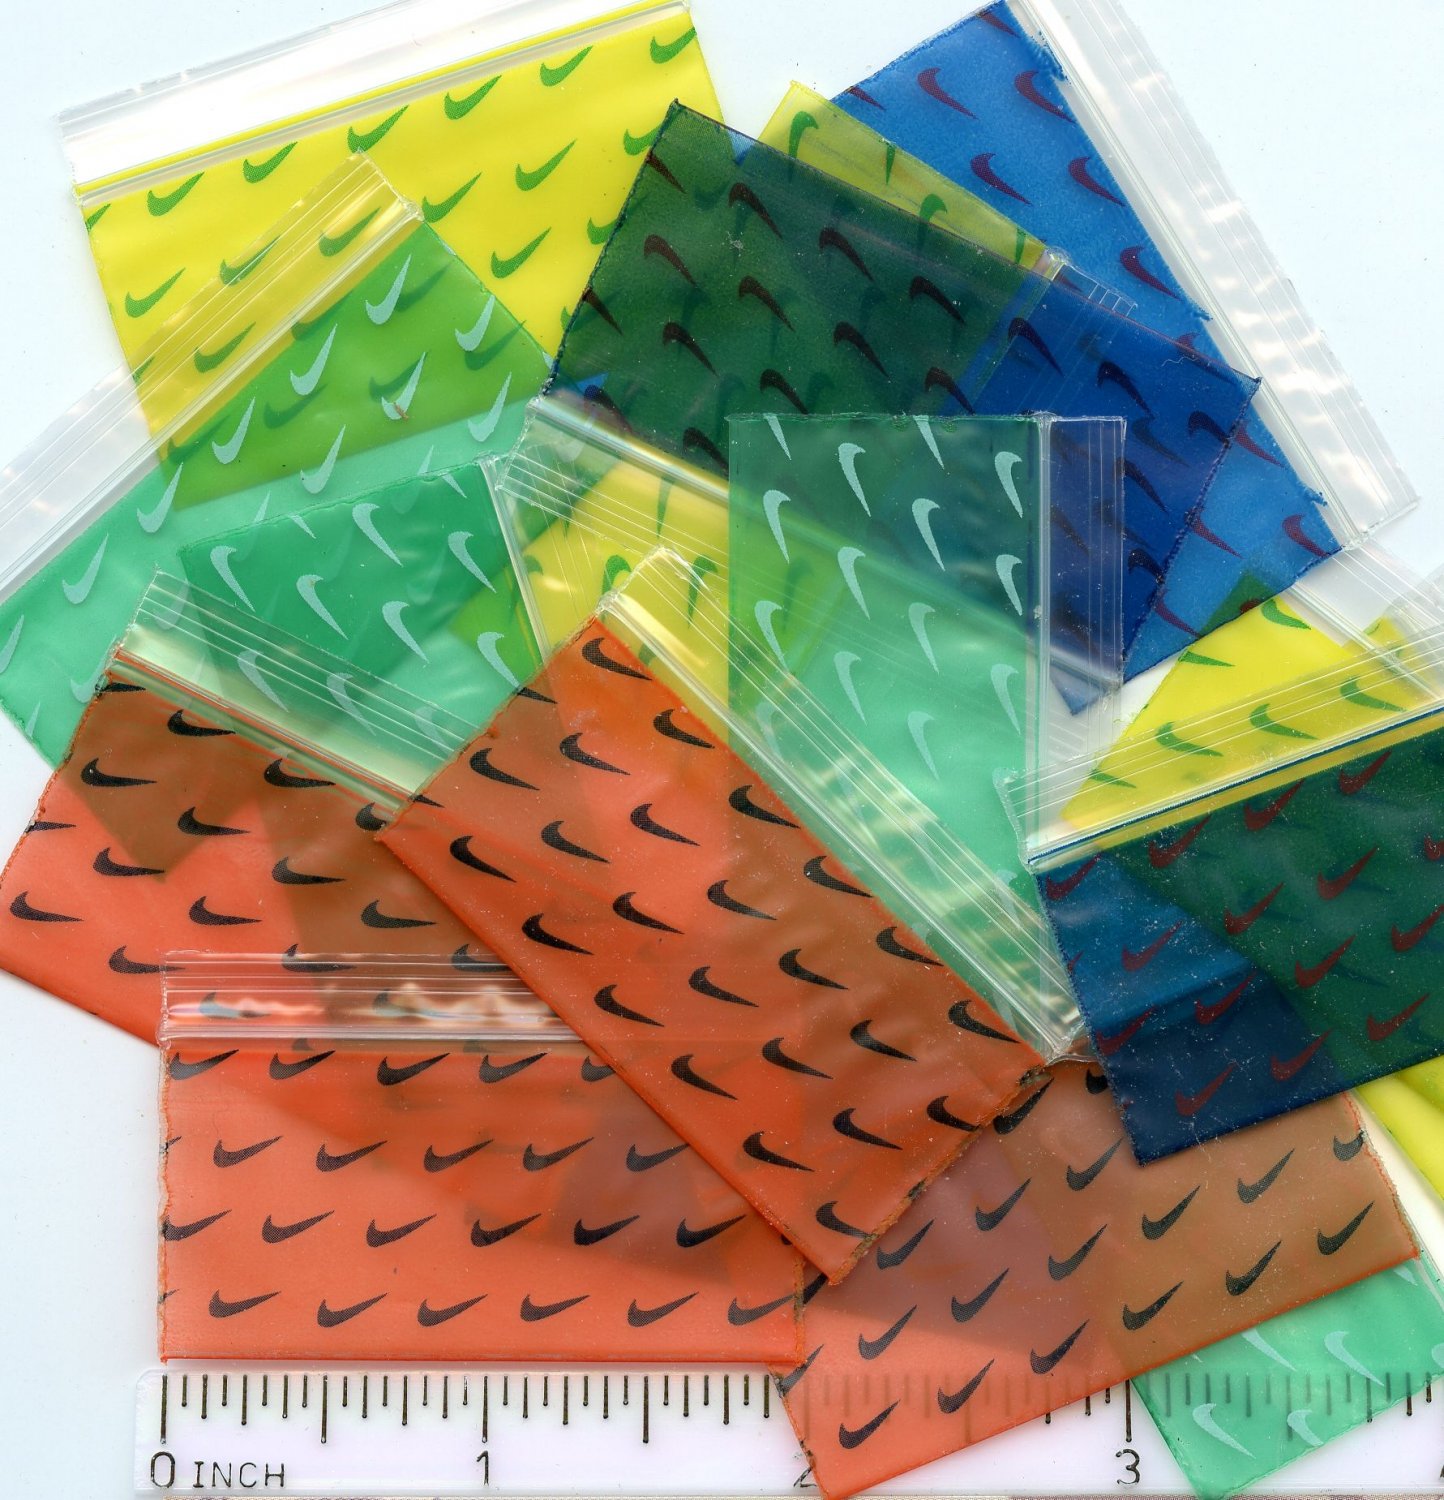 100 Swoosh Color Mix Apple Baggies 2 x 1" zip lock bags 2010